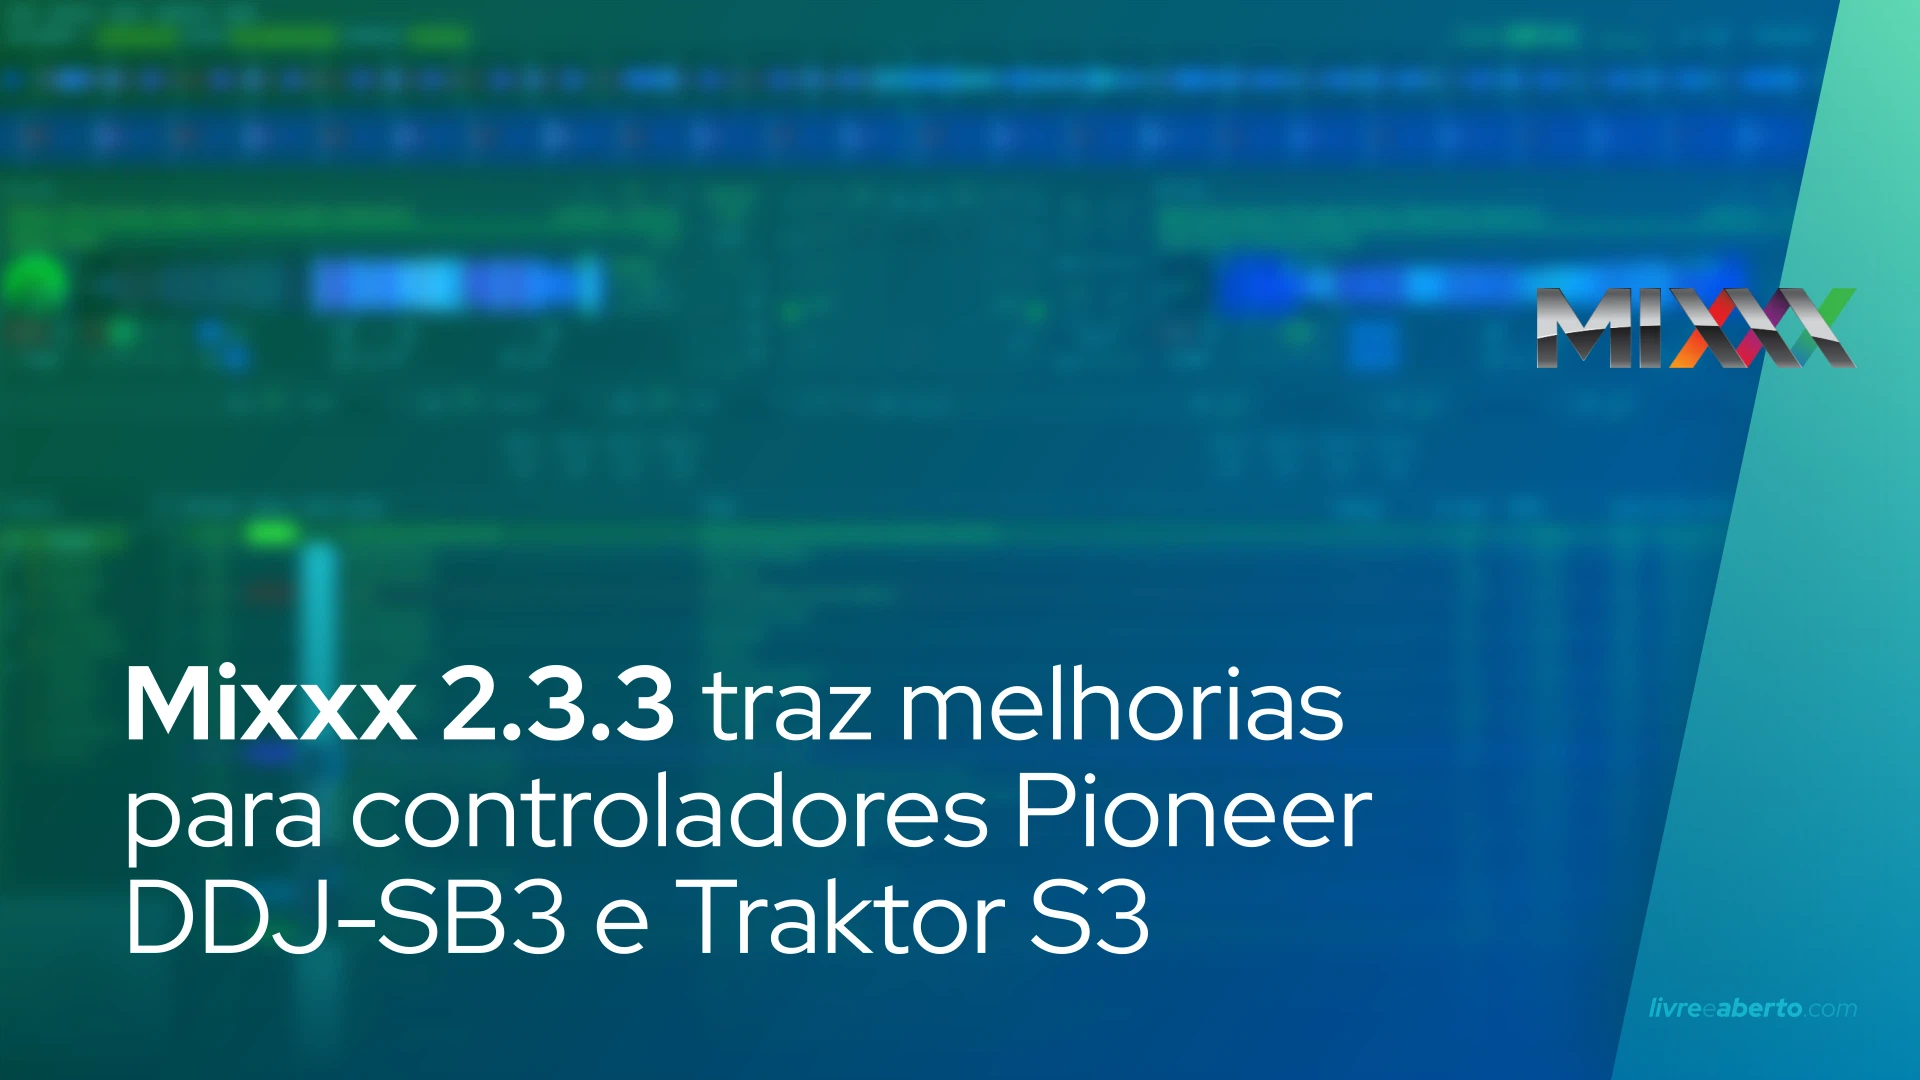 Mixxx 2.3.3 traz melhorias para controladores Pioneer DDJ-SB3 e Traktor S3